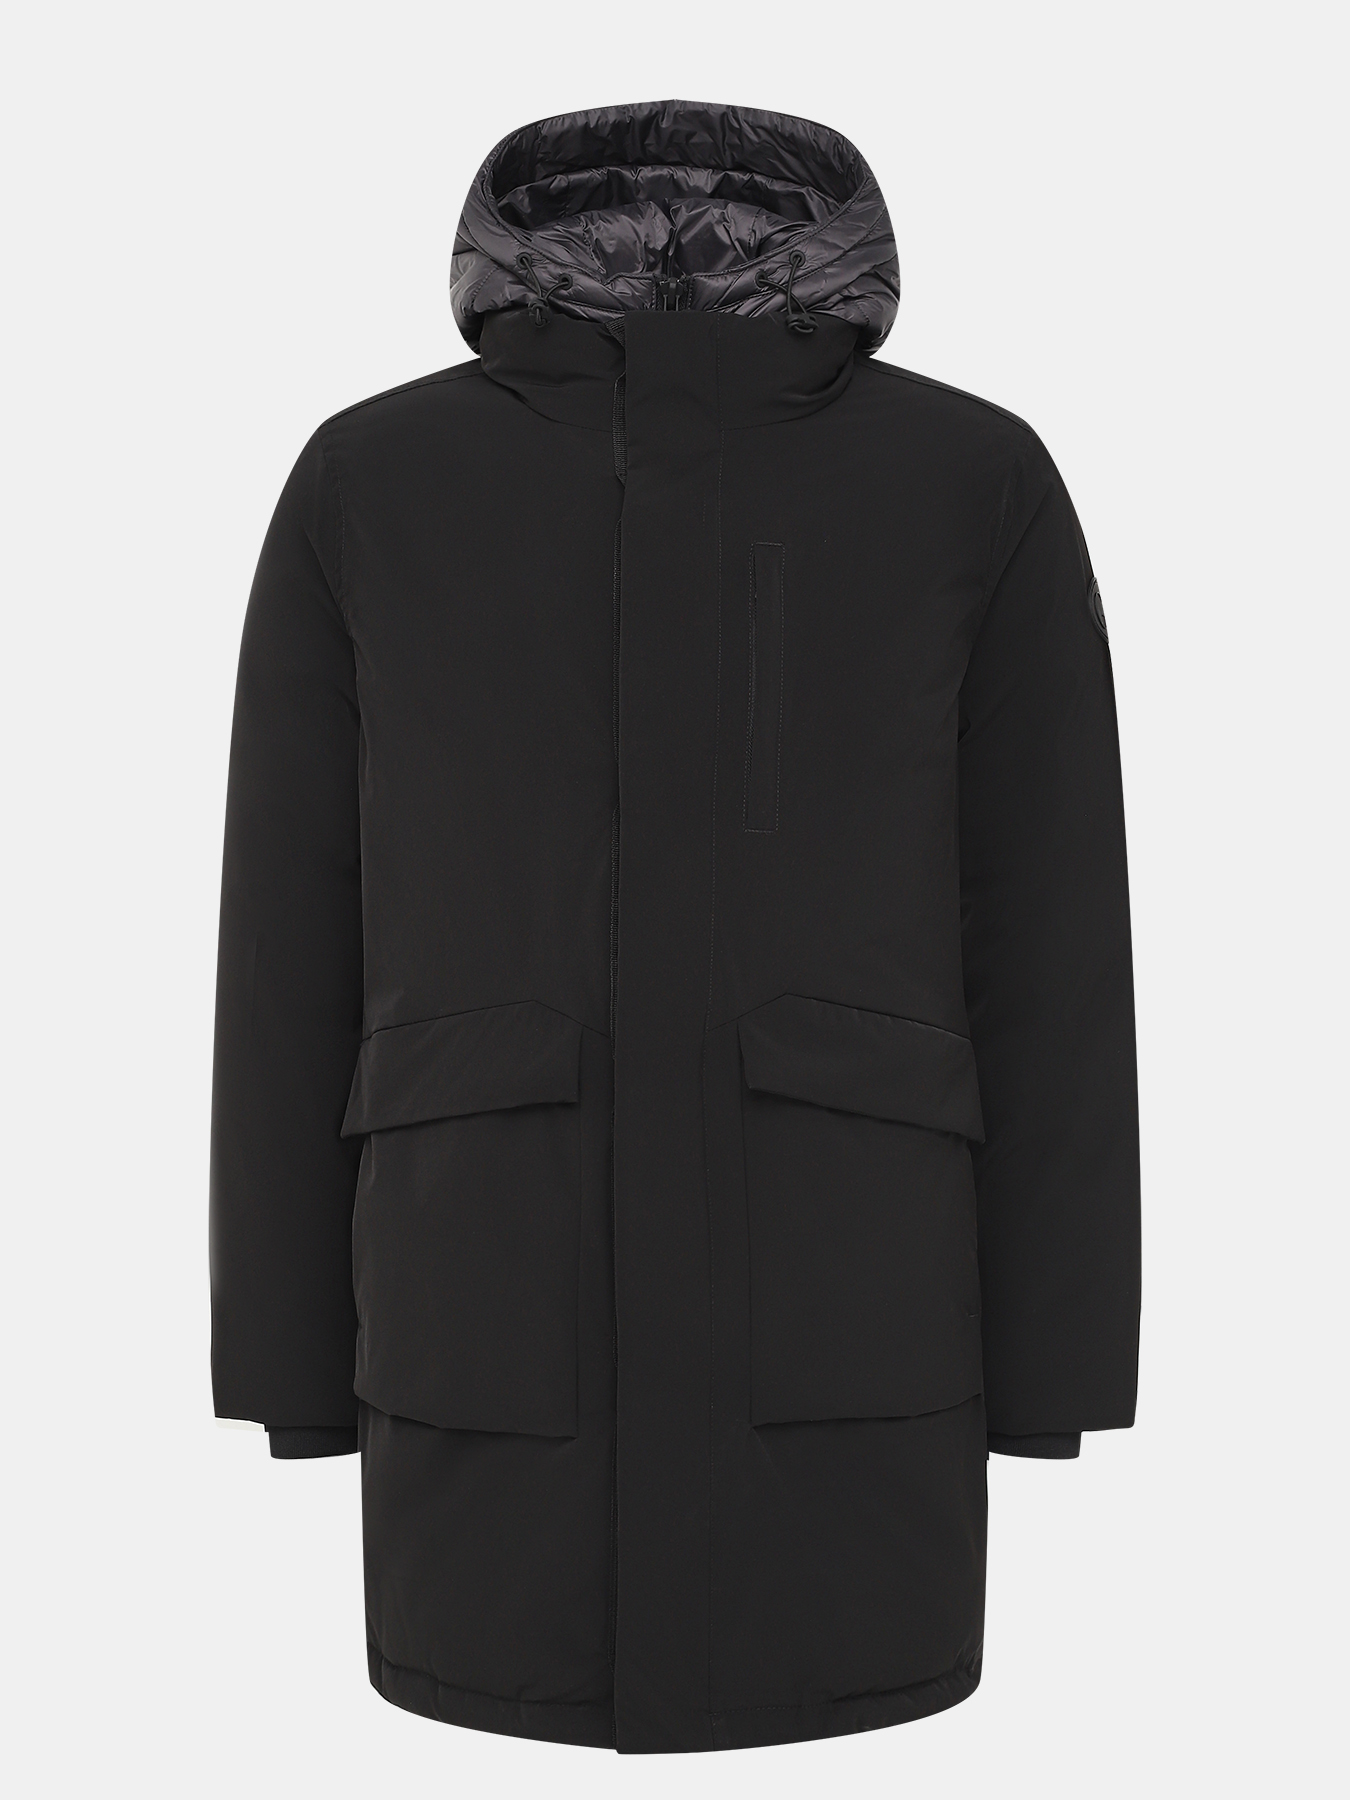 Куртка Gianfranco Ferre 418905-045, цвет черный, размер 52